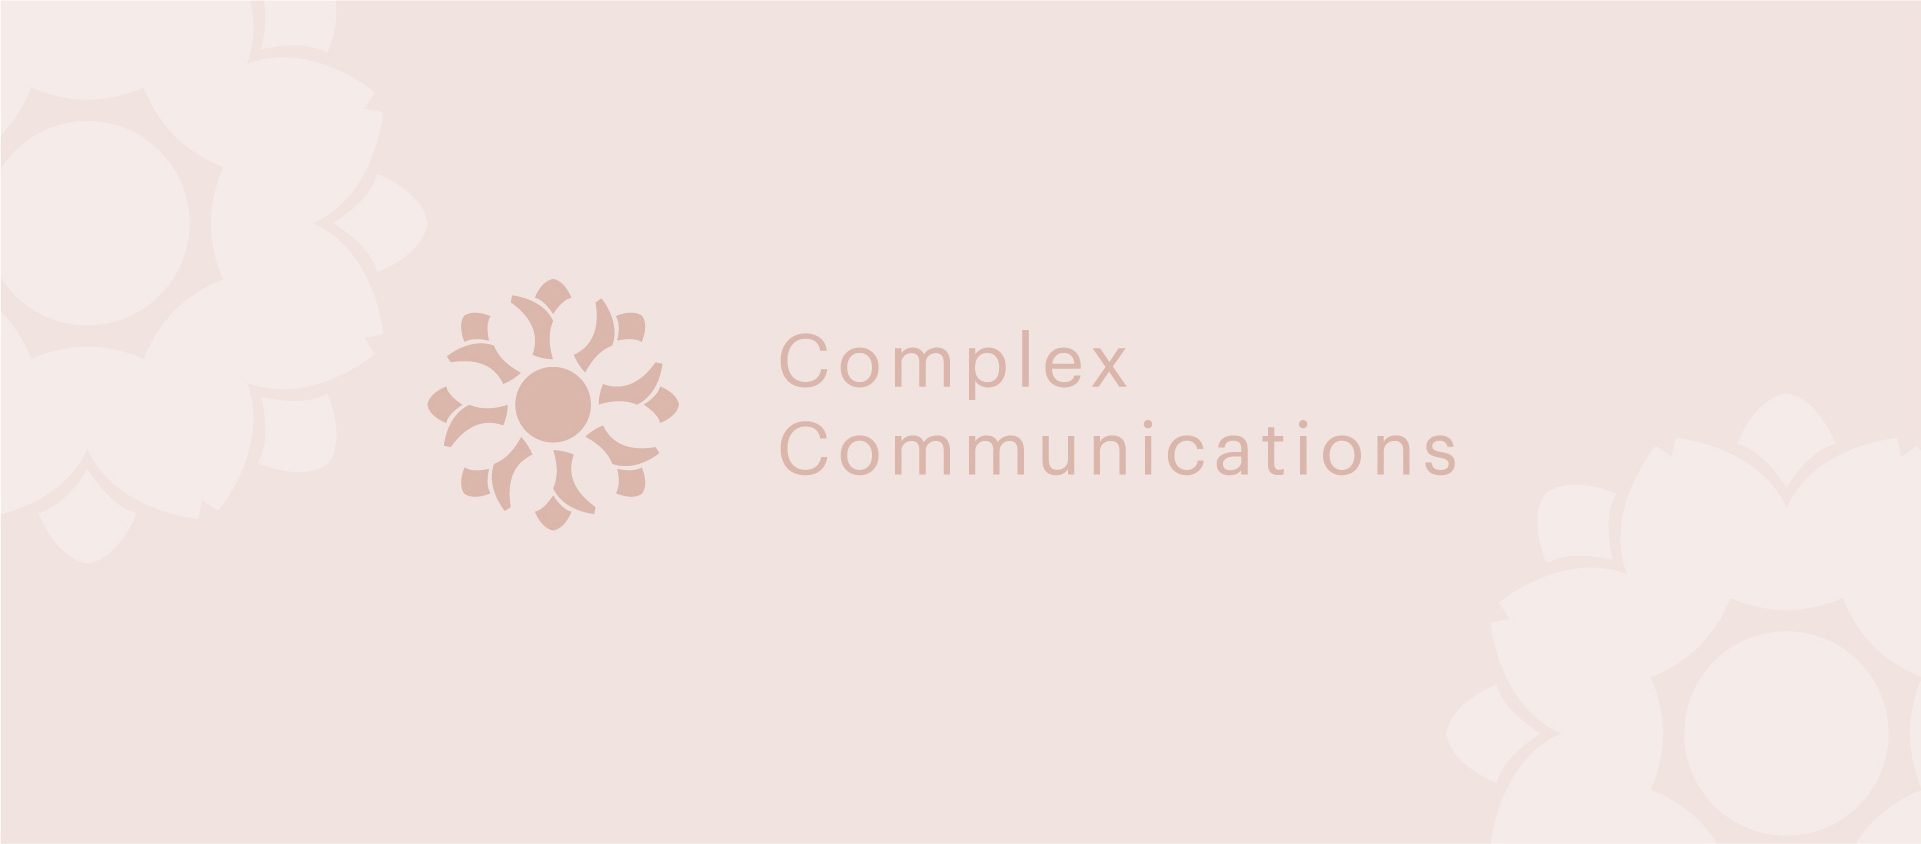 roni zongor DESIGN - Complex Communications - Logo designdesign